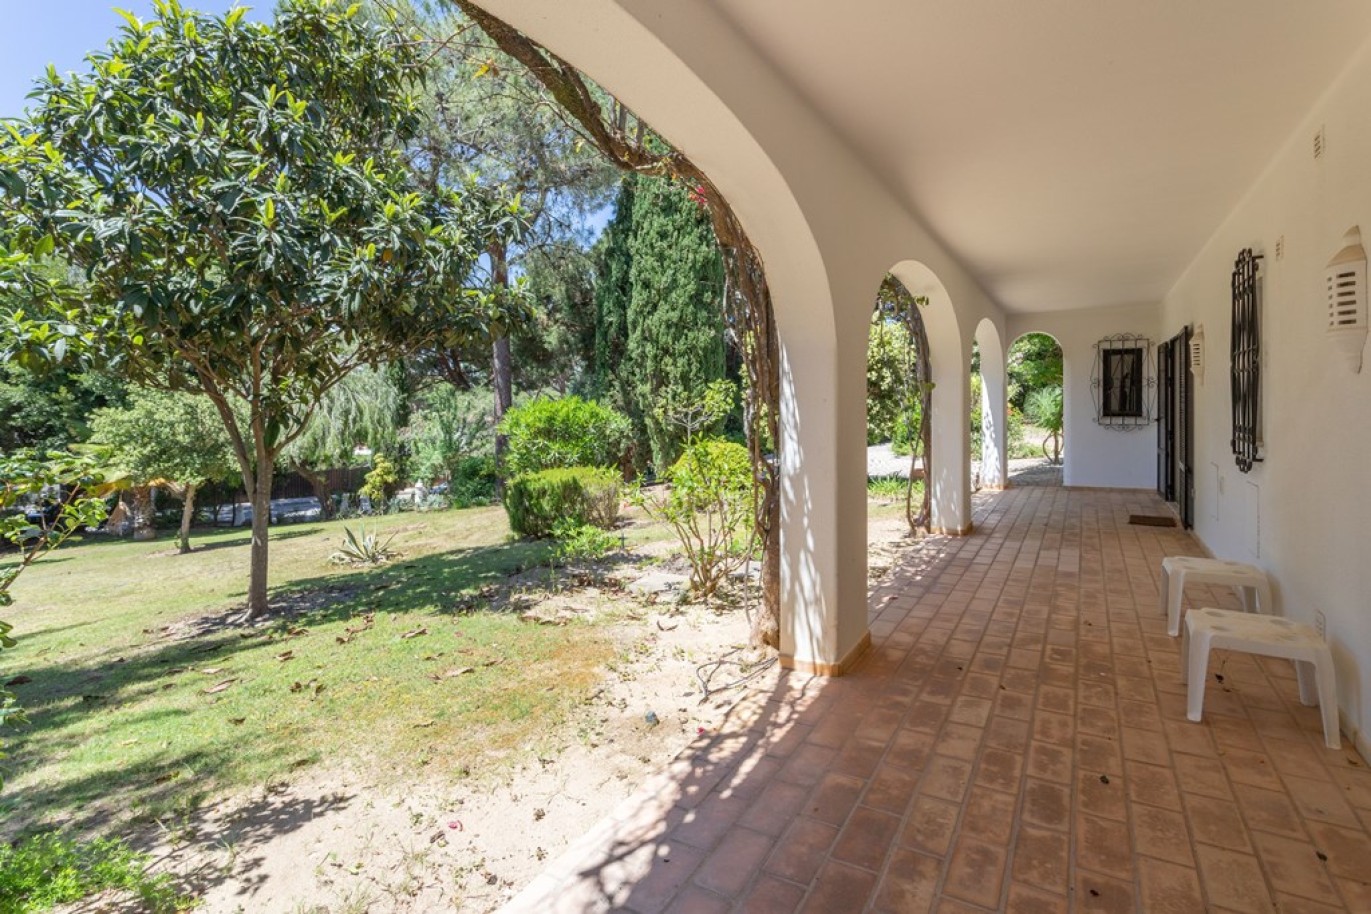 Detached house for sale in Vale do Lobo, Algarve_264566